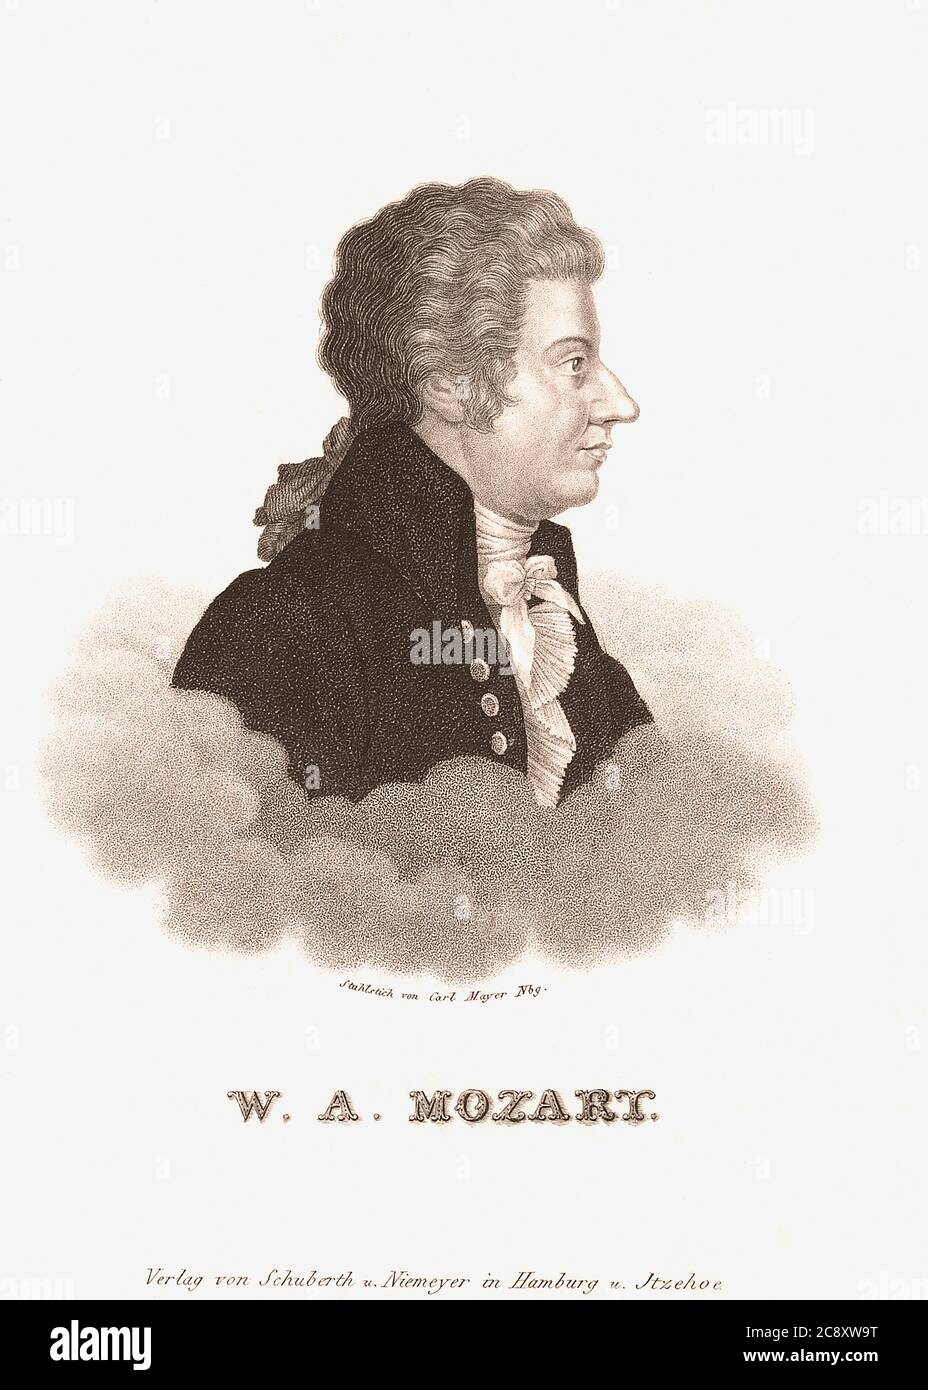 Wolfgang Amadeus Mozart, 1756 – 1791, baptisé Johannes Chrysostomus Wolfgangus Theophilus Mozart. Compositeur prolifique et influent de l'ère classique. Après une gravure du XIXe siècle par l'artiste allemand Carl Mayer. Banque D'Images